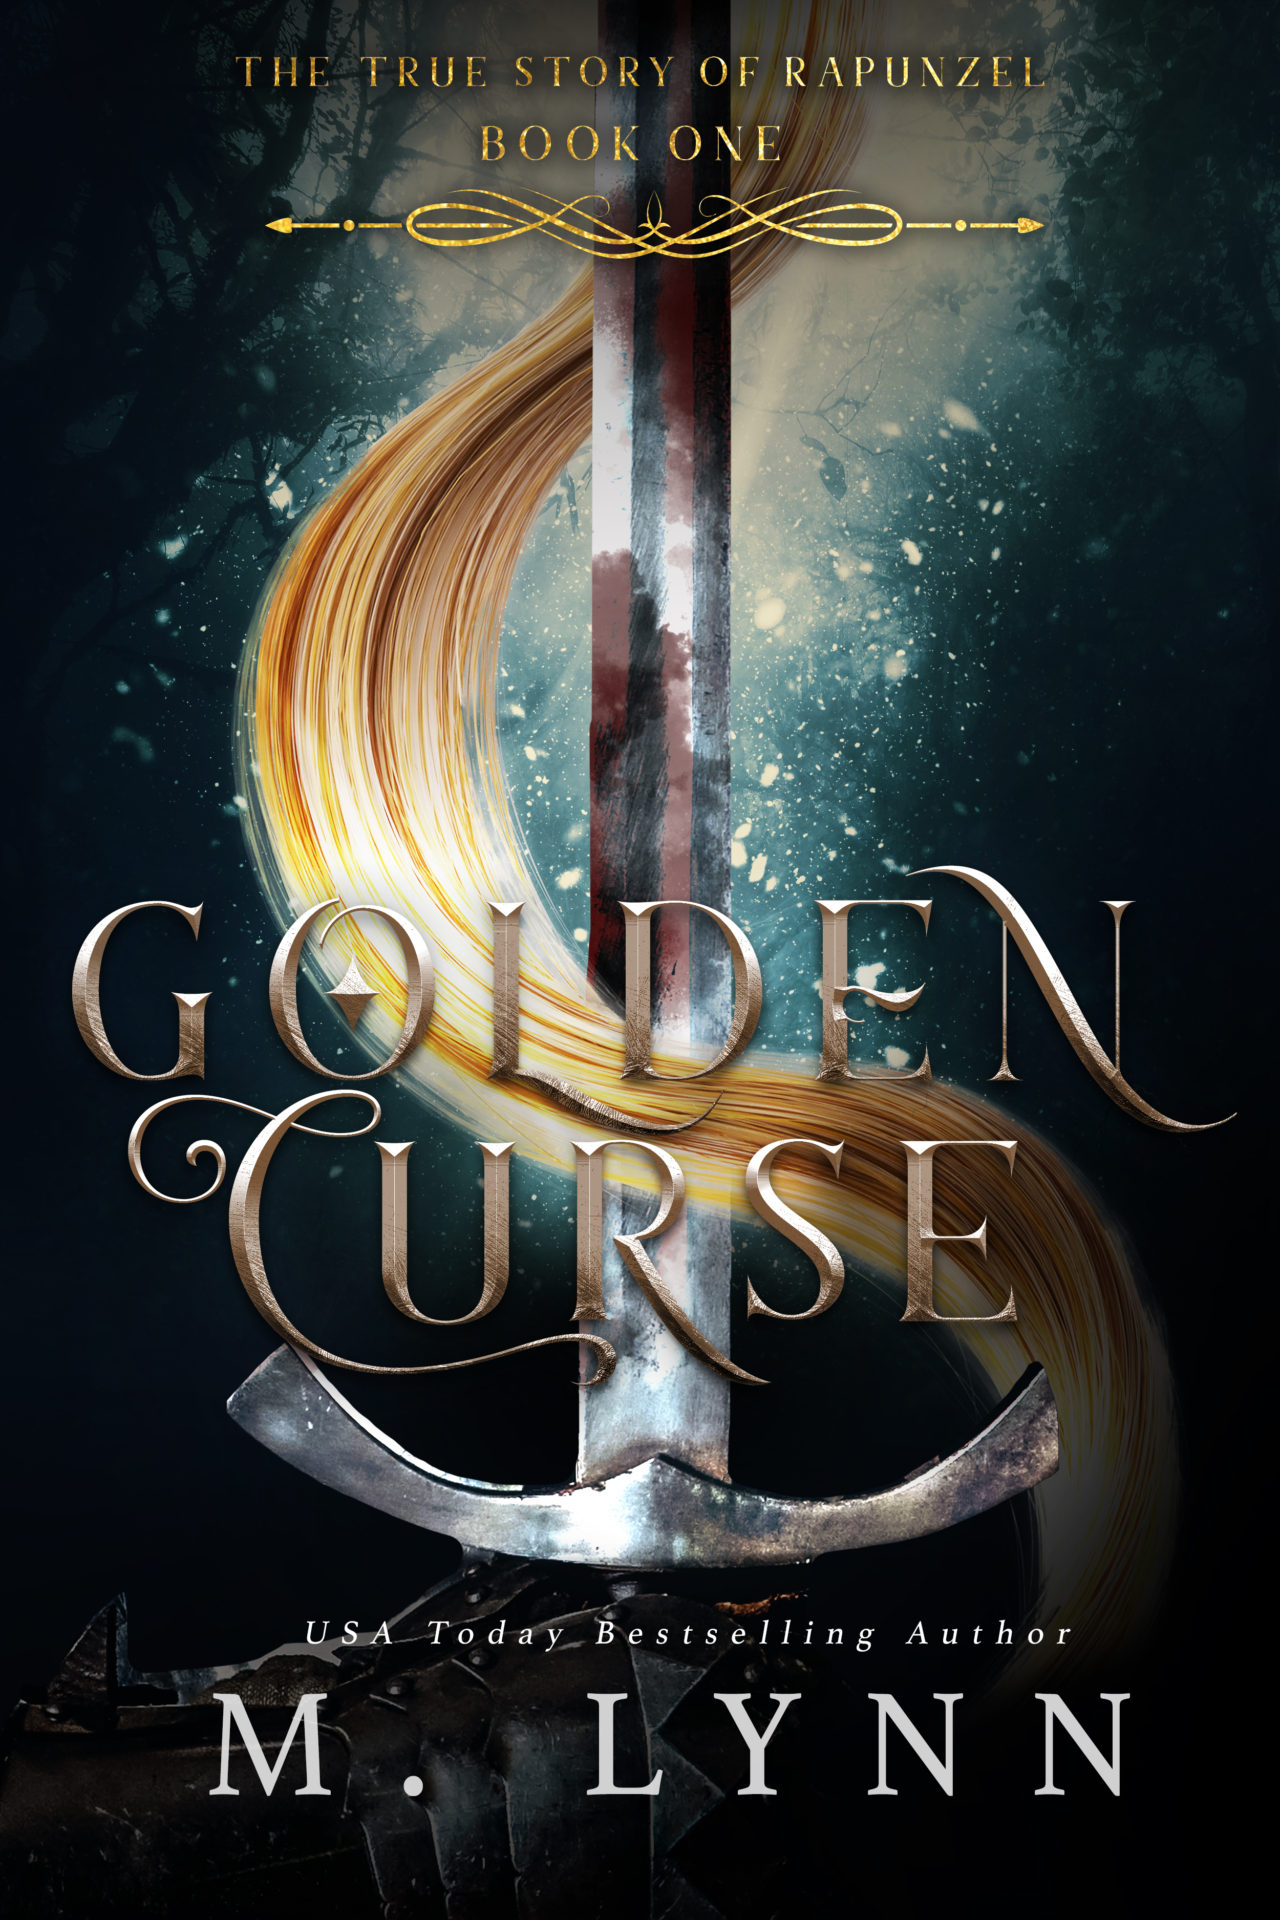 golden curse m lynn